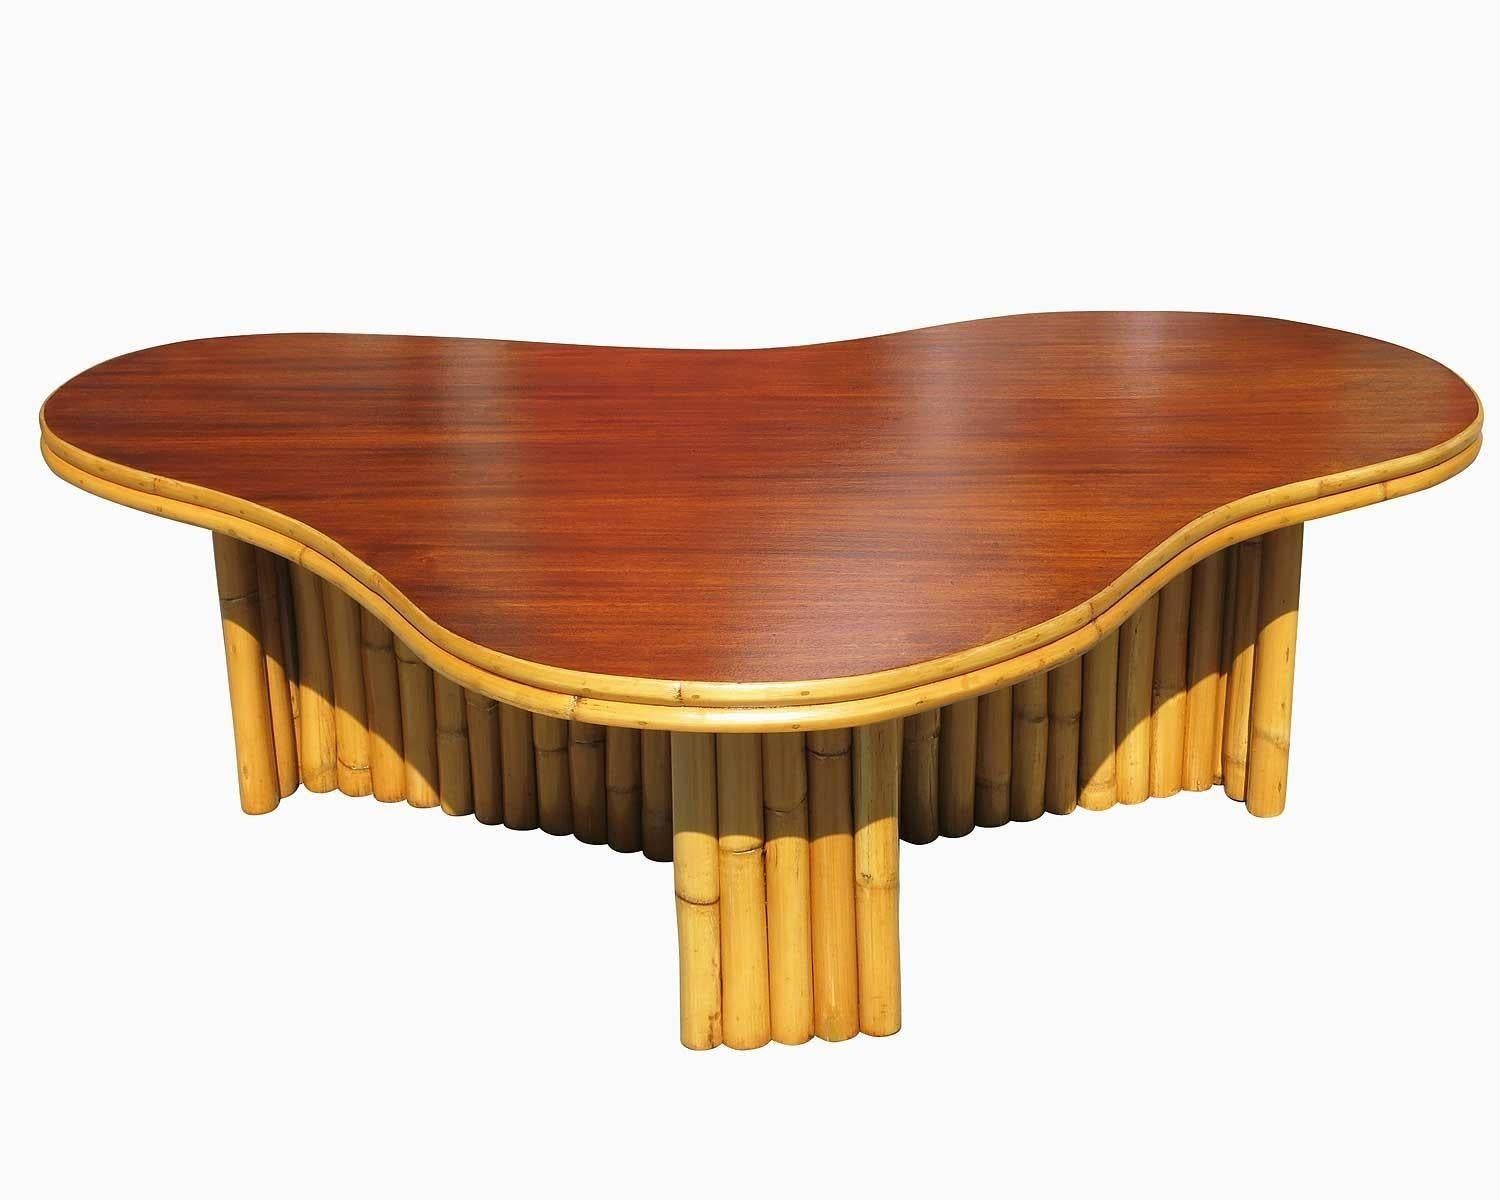 Table basse biomorphe en rotin avec un plateau en acajou en forme d'amibe, vers 1950. Cette table présente un design de pieds de poteaux groupés et une bordure en rotin bâton le long du plateau.

Remise à neuf pour vous. Tous les meubles en rotin,